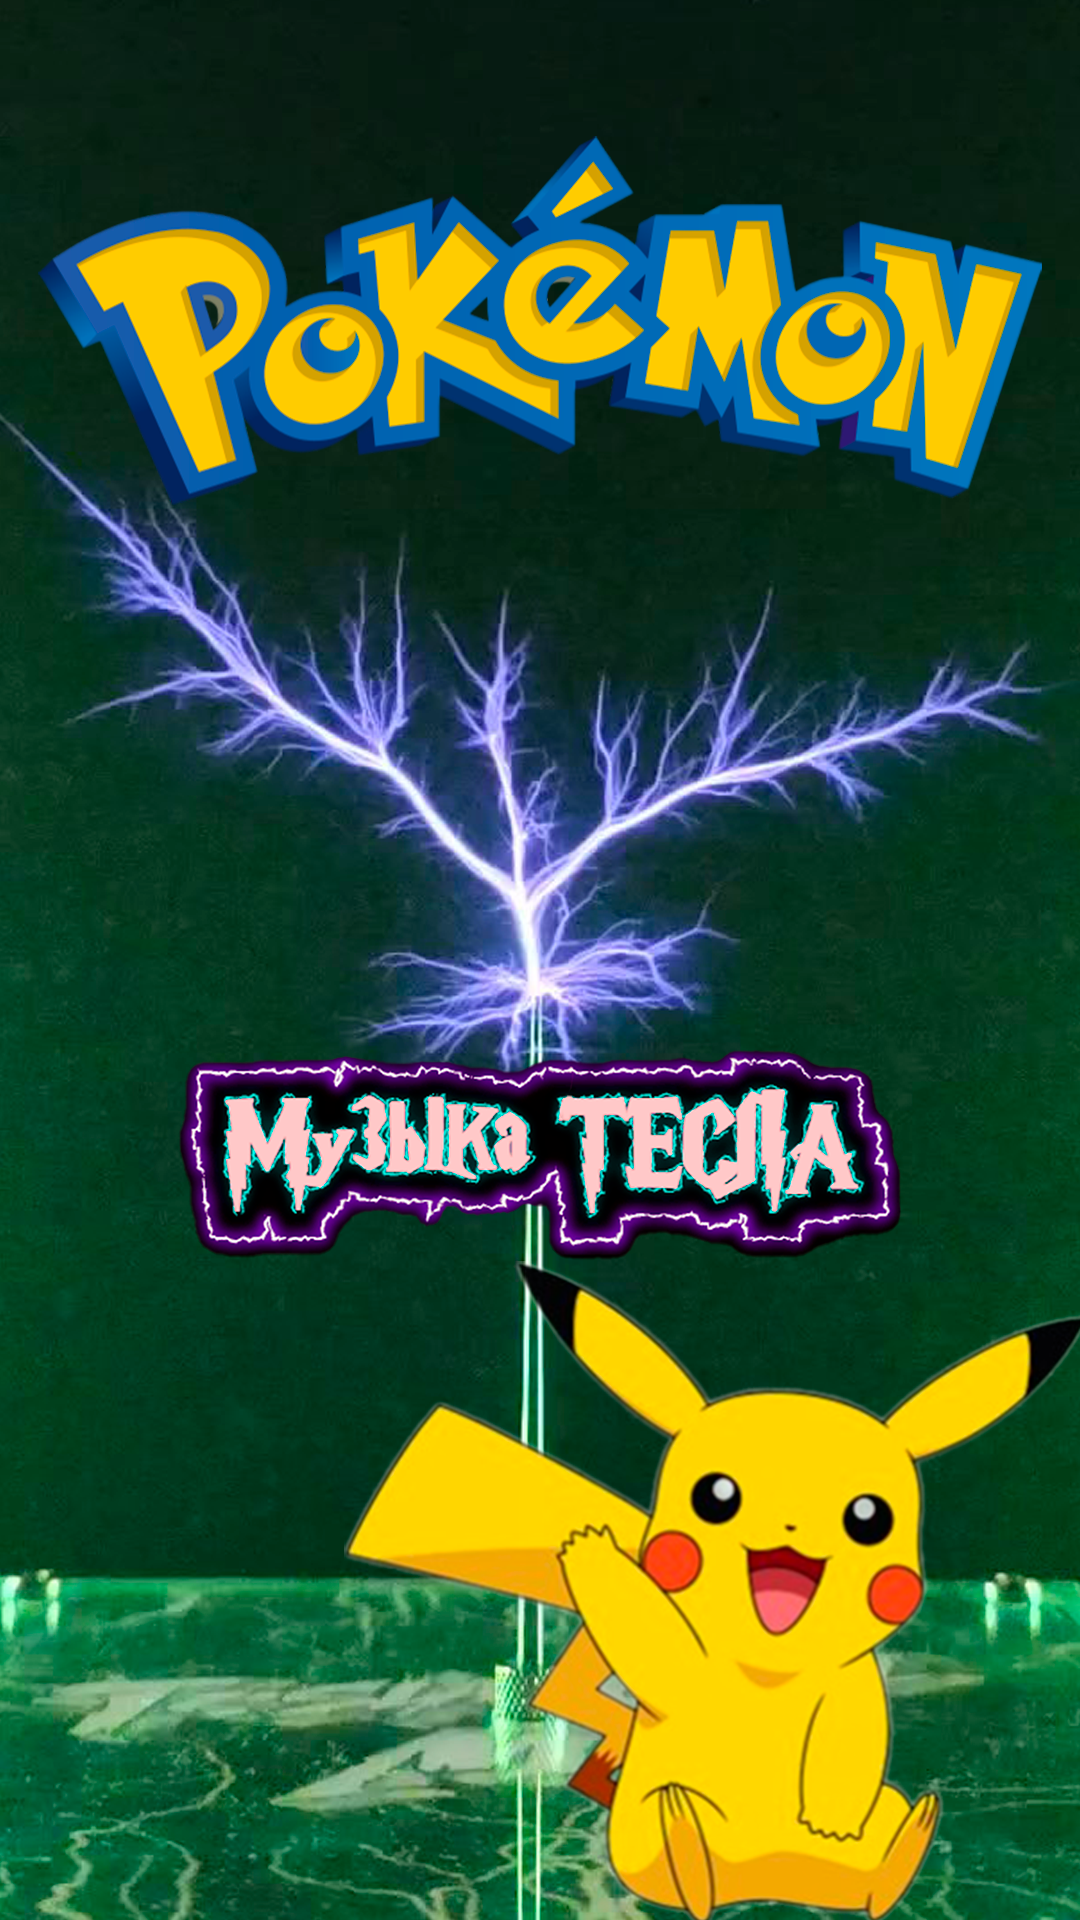 Pokémon Theme Song Tesla Coil Mix #музыкатесла